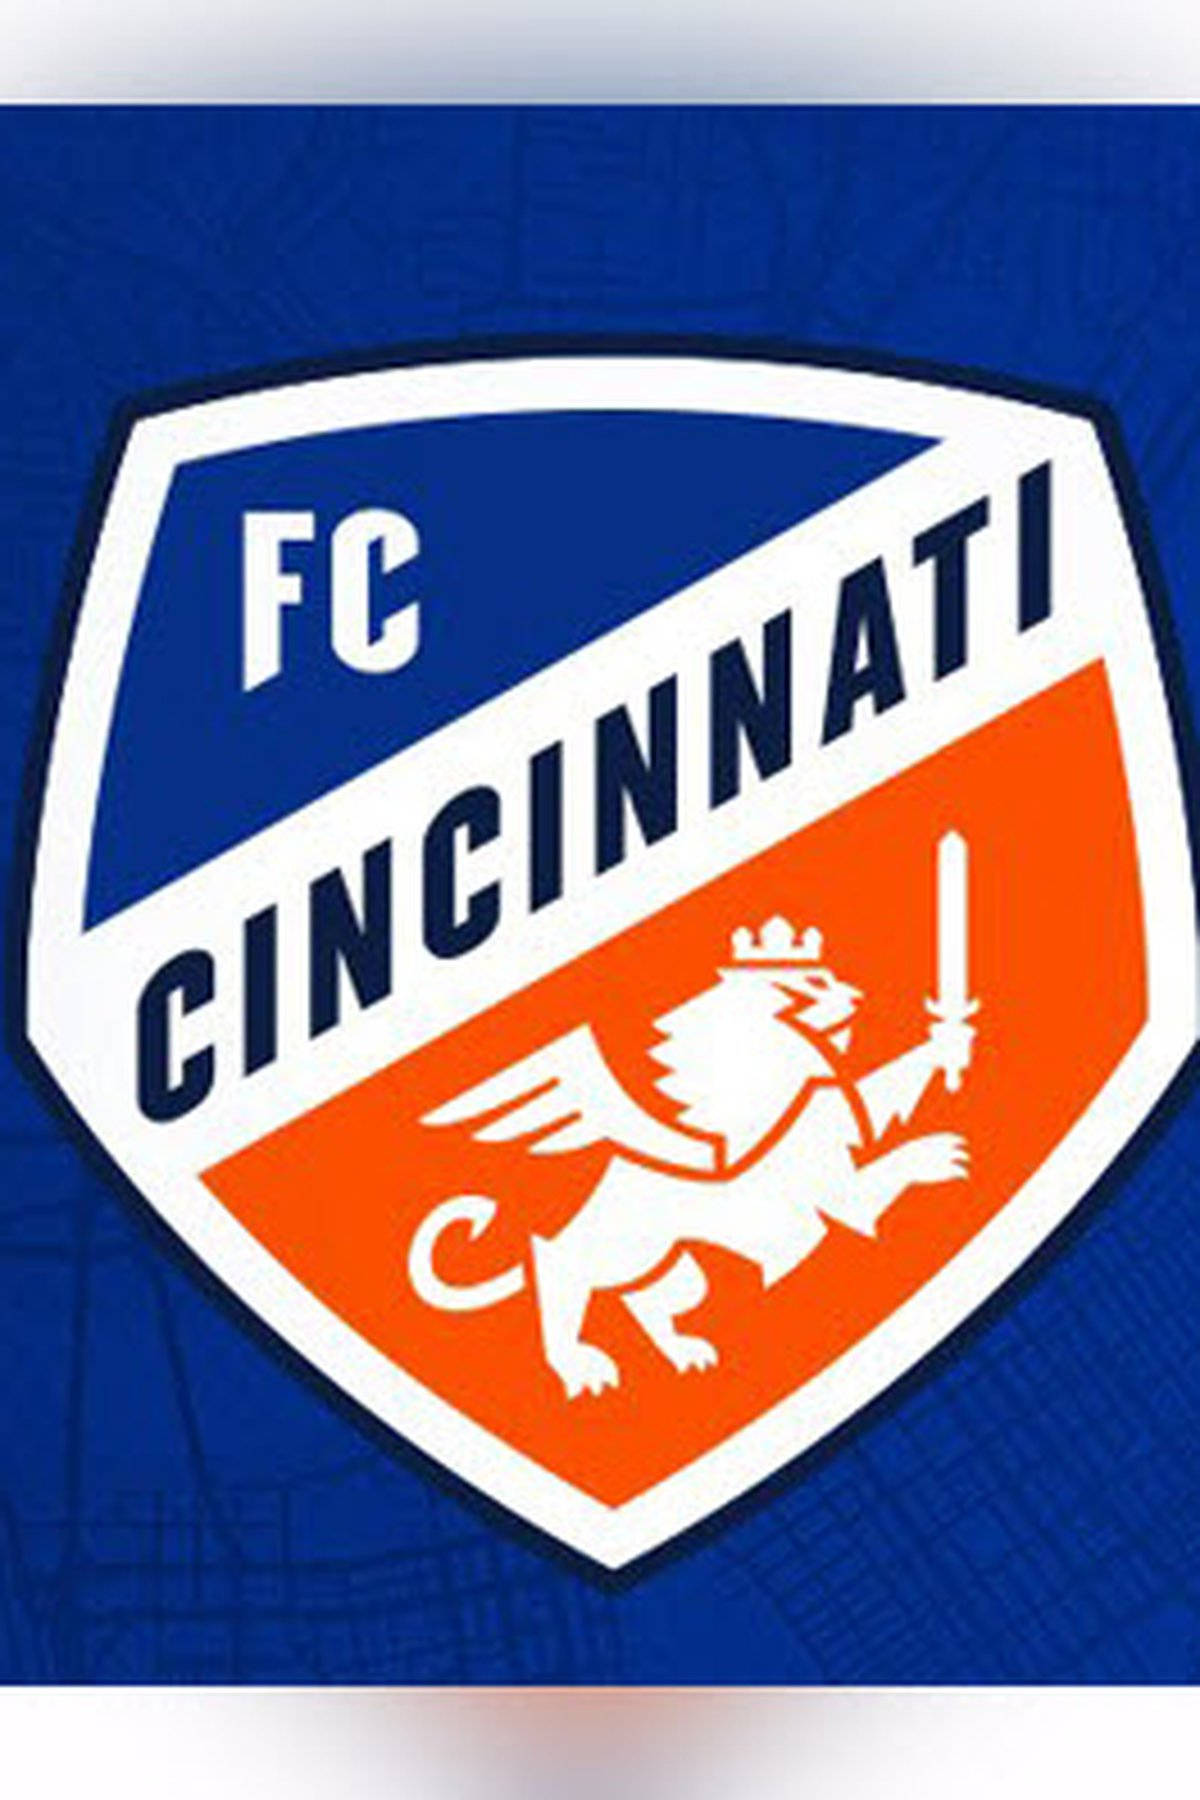 Logoet for FC Cincinnati har en løve Wallpaper